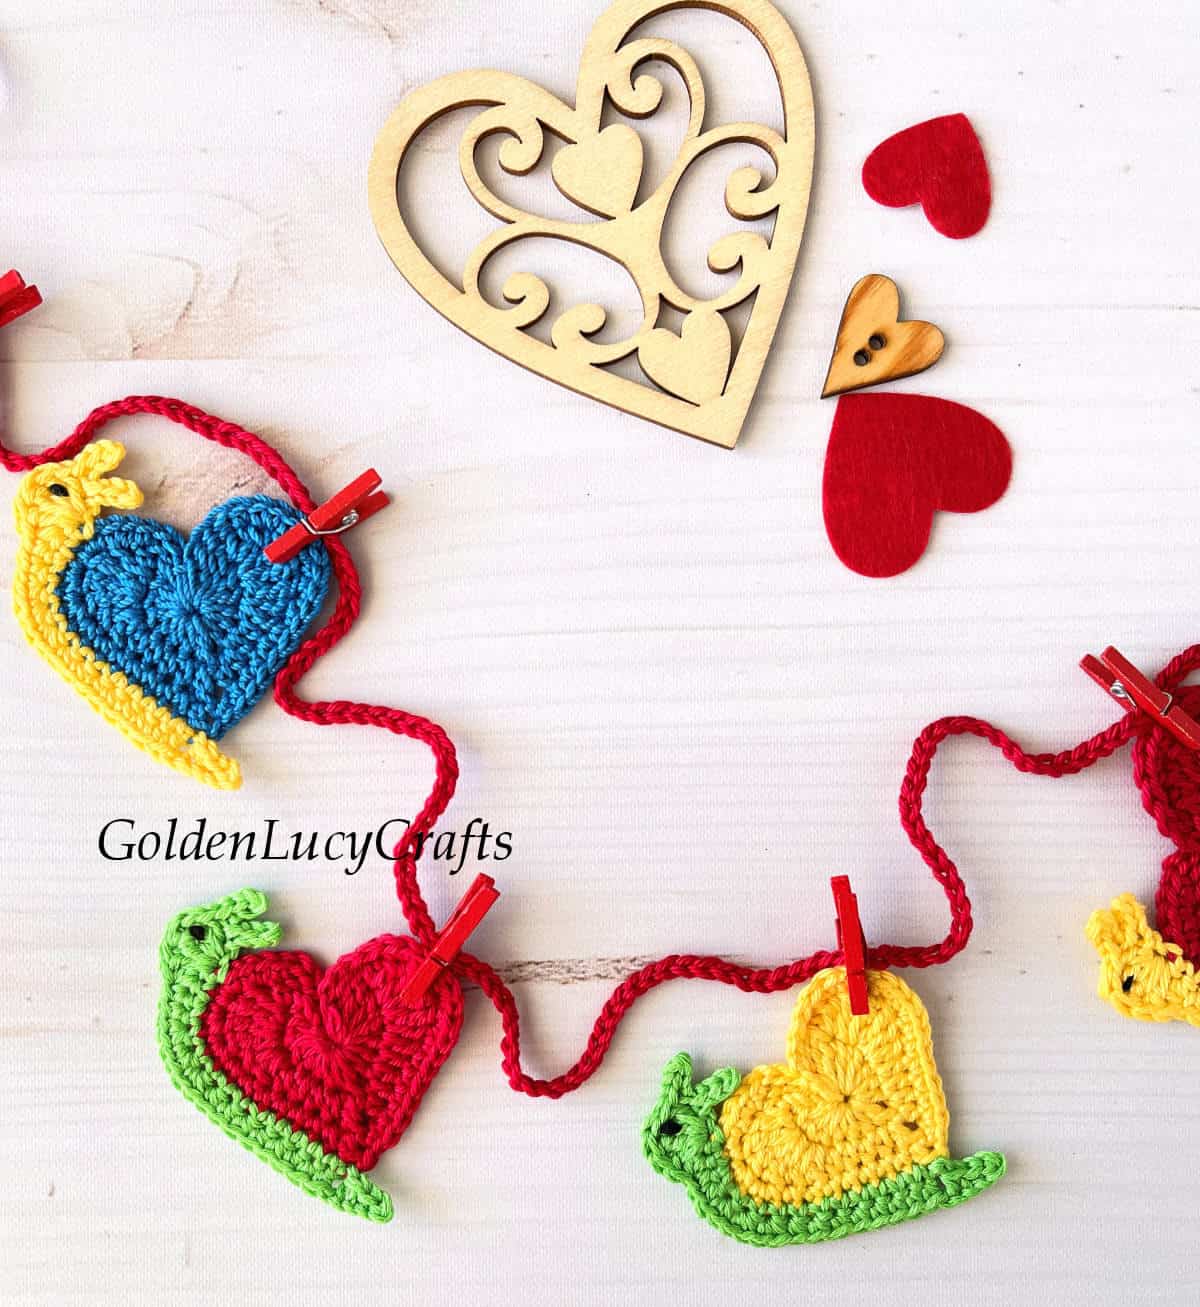 Crochet garland made from heart snail appliques.